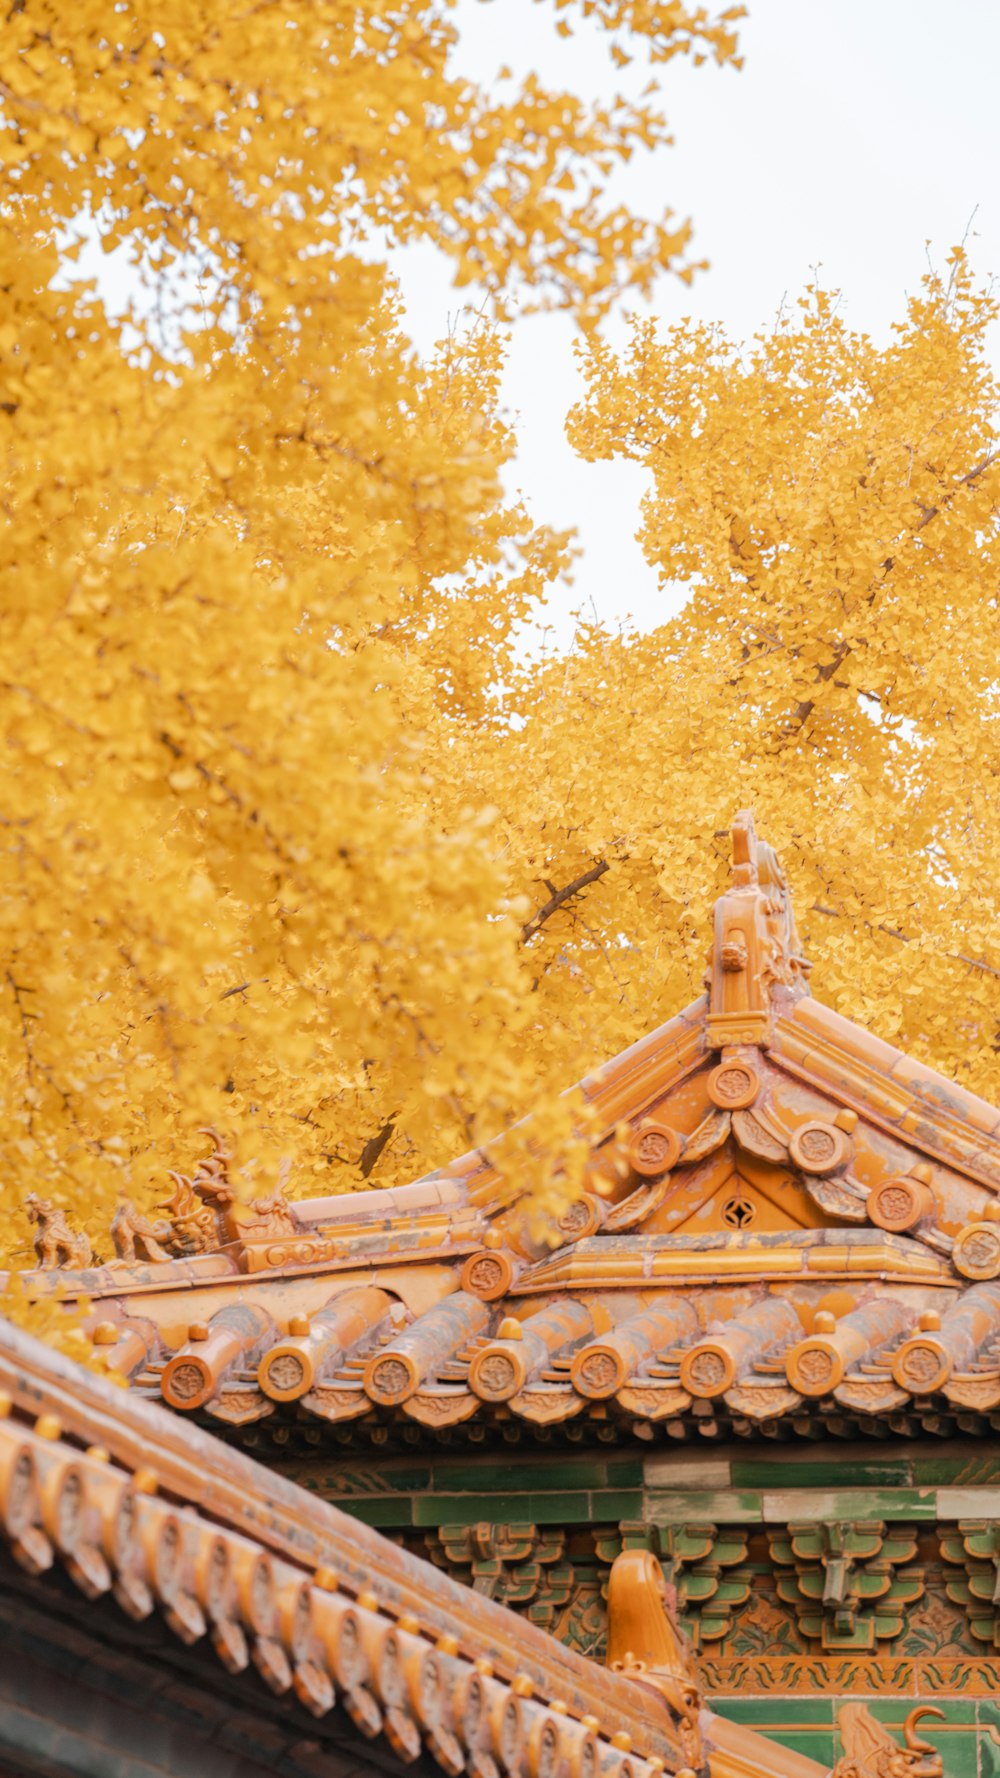 昼間の黄葉樹の下の茶色い木の屋根